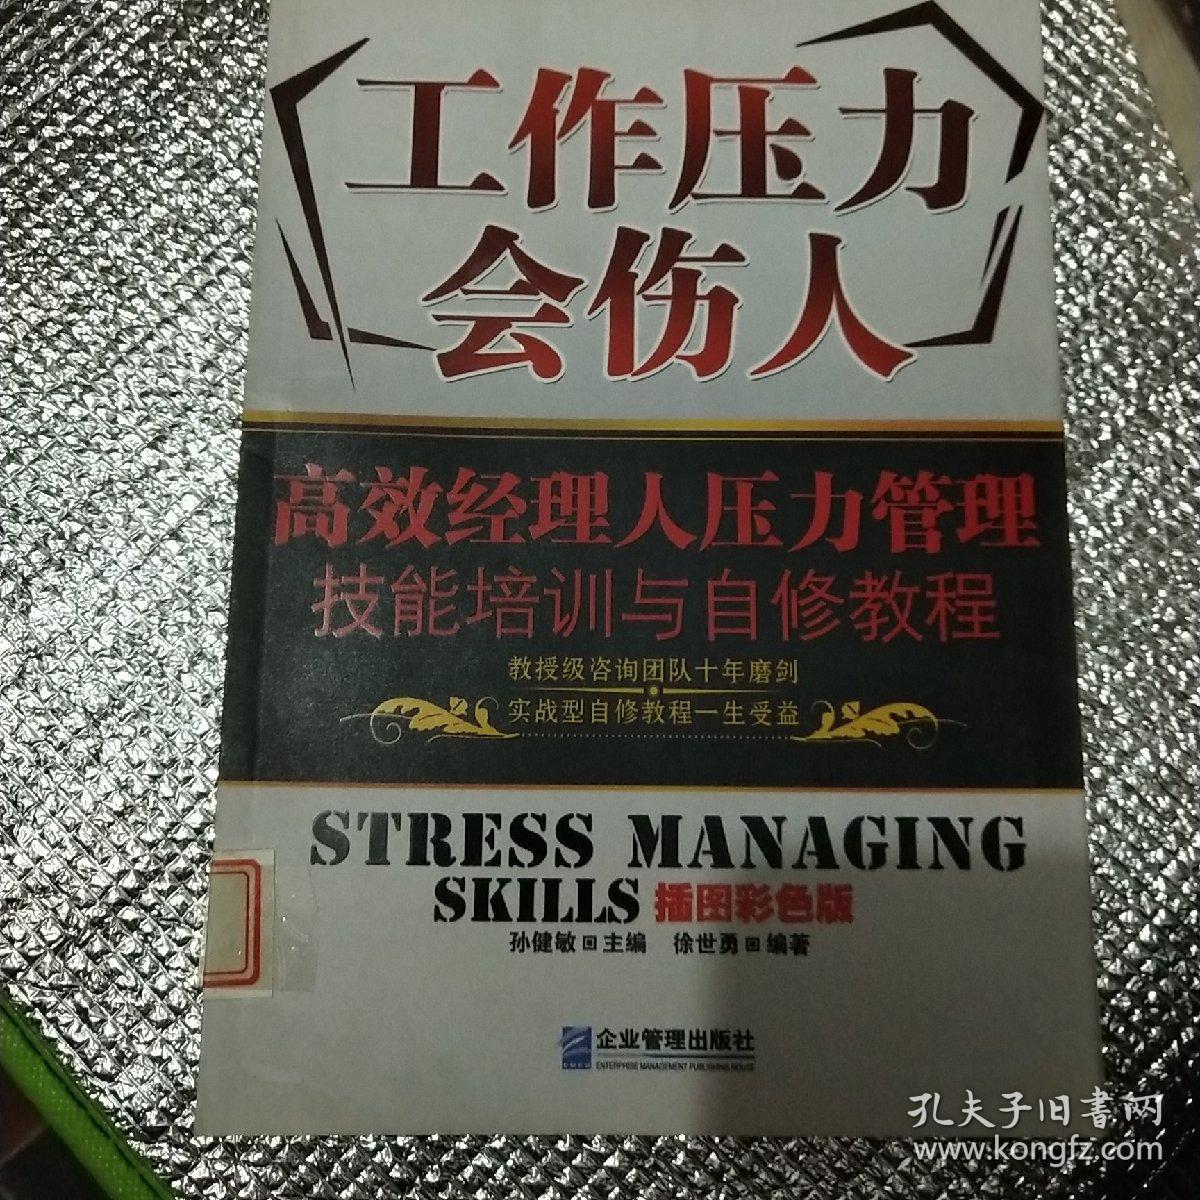 工作压力会伤人:高效经理人压力管理技能培训与自修教程(插图彩色版)